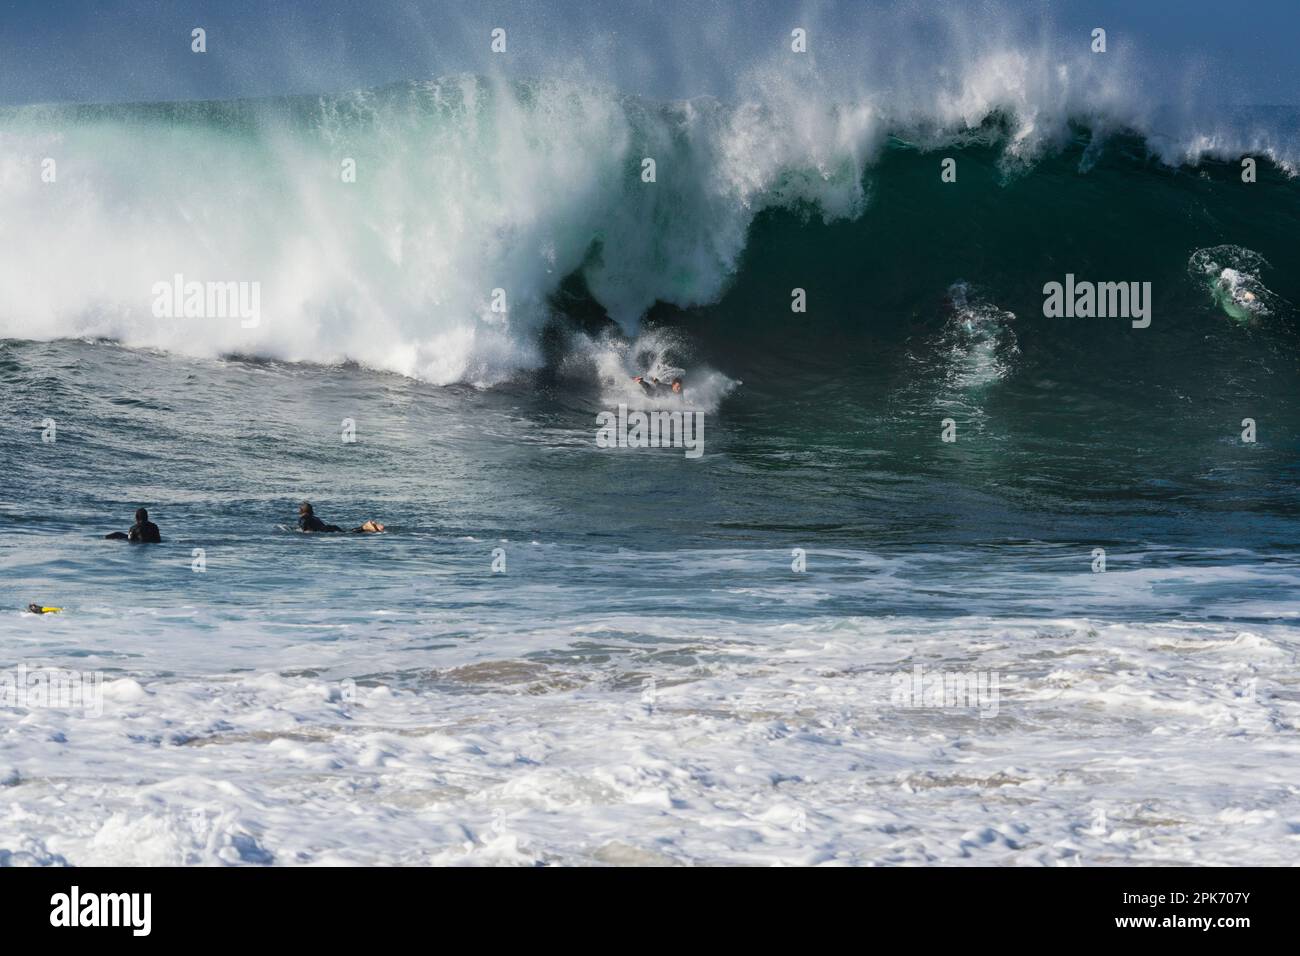 Hombre surfeando en ola grande, Newport Beach, California, EE.UU Foto de stock